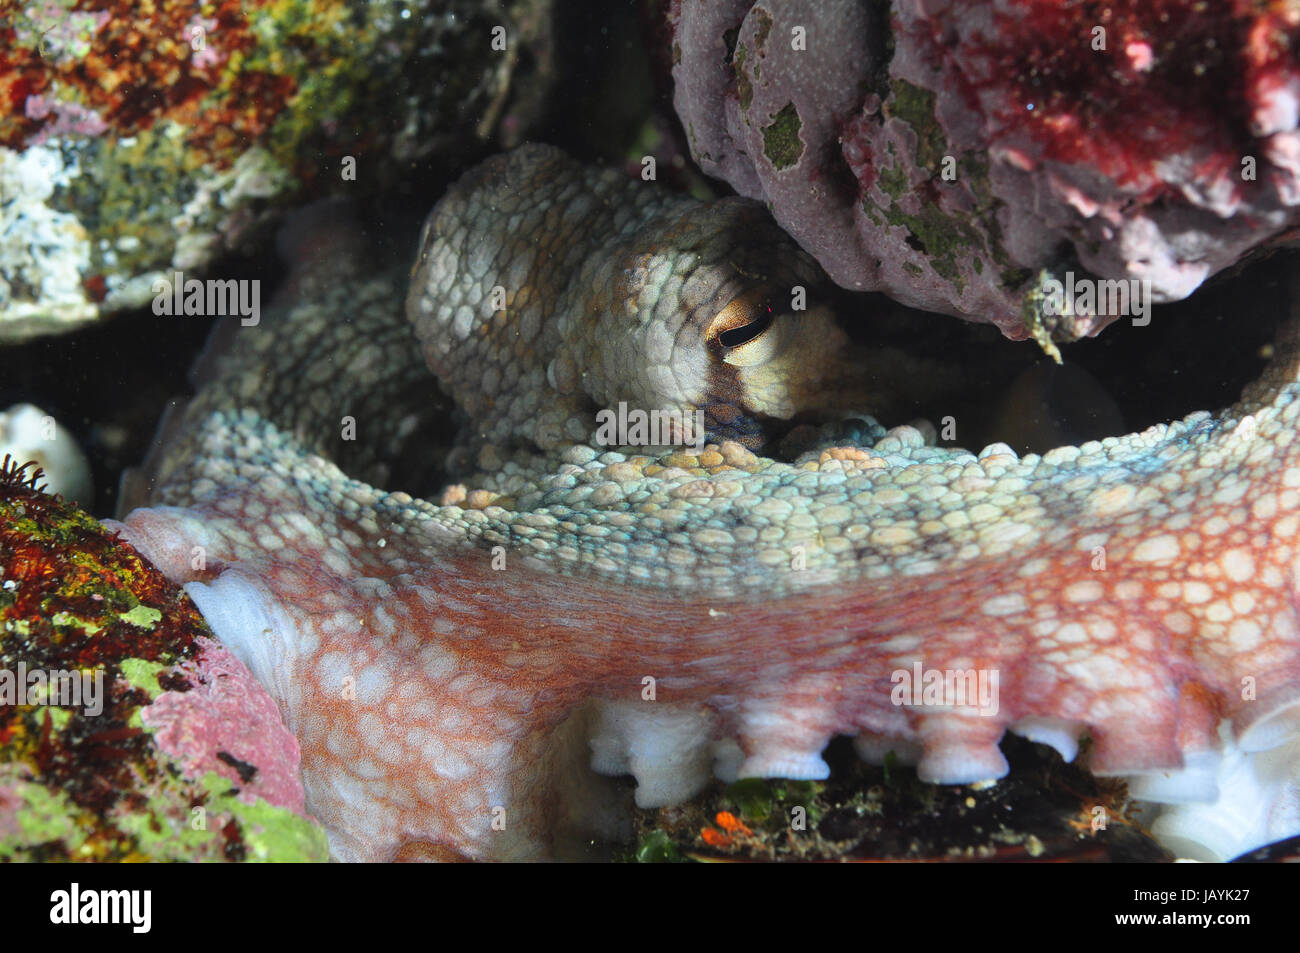 Tintenfisch Tentakeln und Sauger, Unterwasser Foto Stockfoto